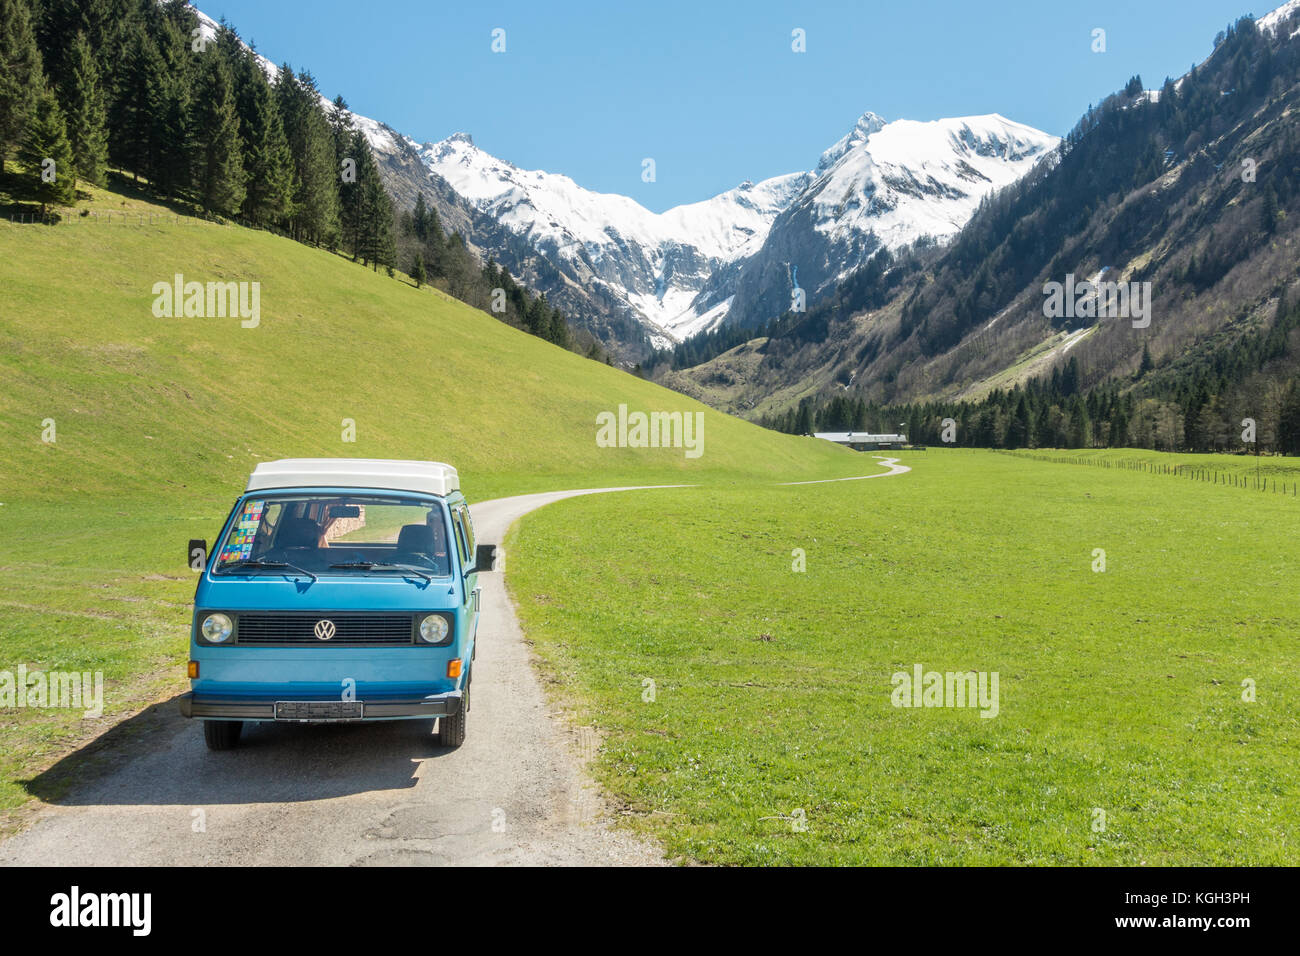 Oberstdorf, Bayern, Deutschland - 10. Mai 2017: Vintage blau und weißen VW Bully camping Auto auf Mountain Valley Road im trettachtal Tal fahren, Allgäuer Alpen. Stockfoto